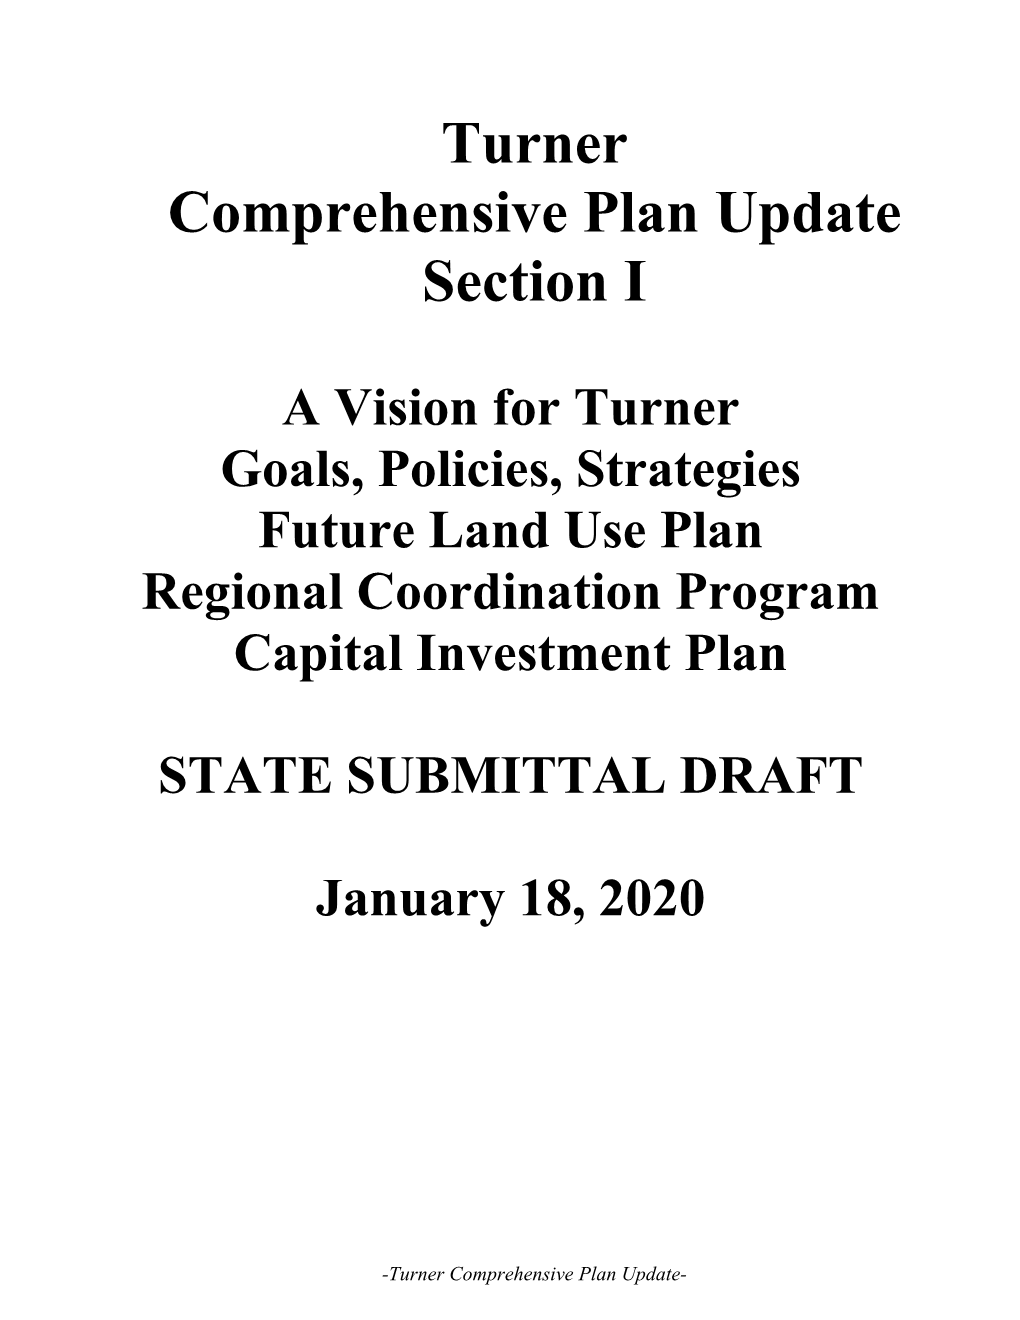 Turner Comprehensive Plan Update Section I